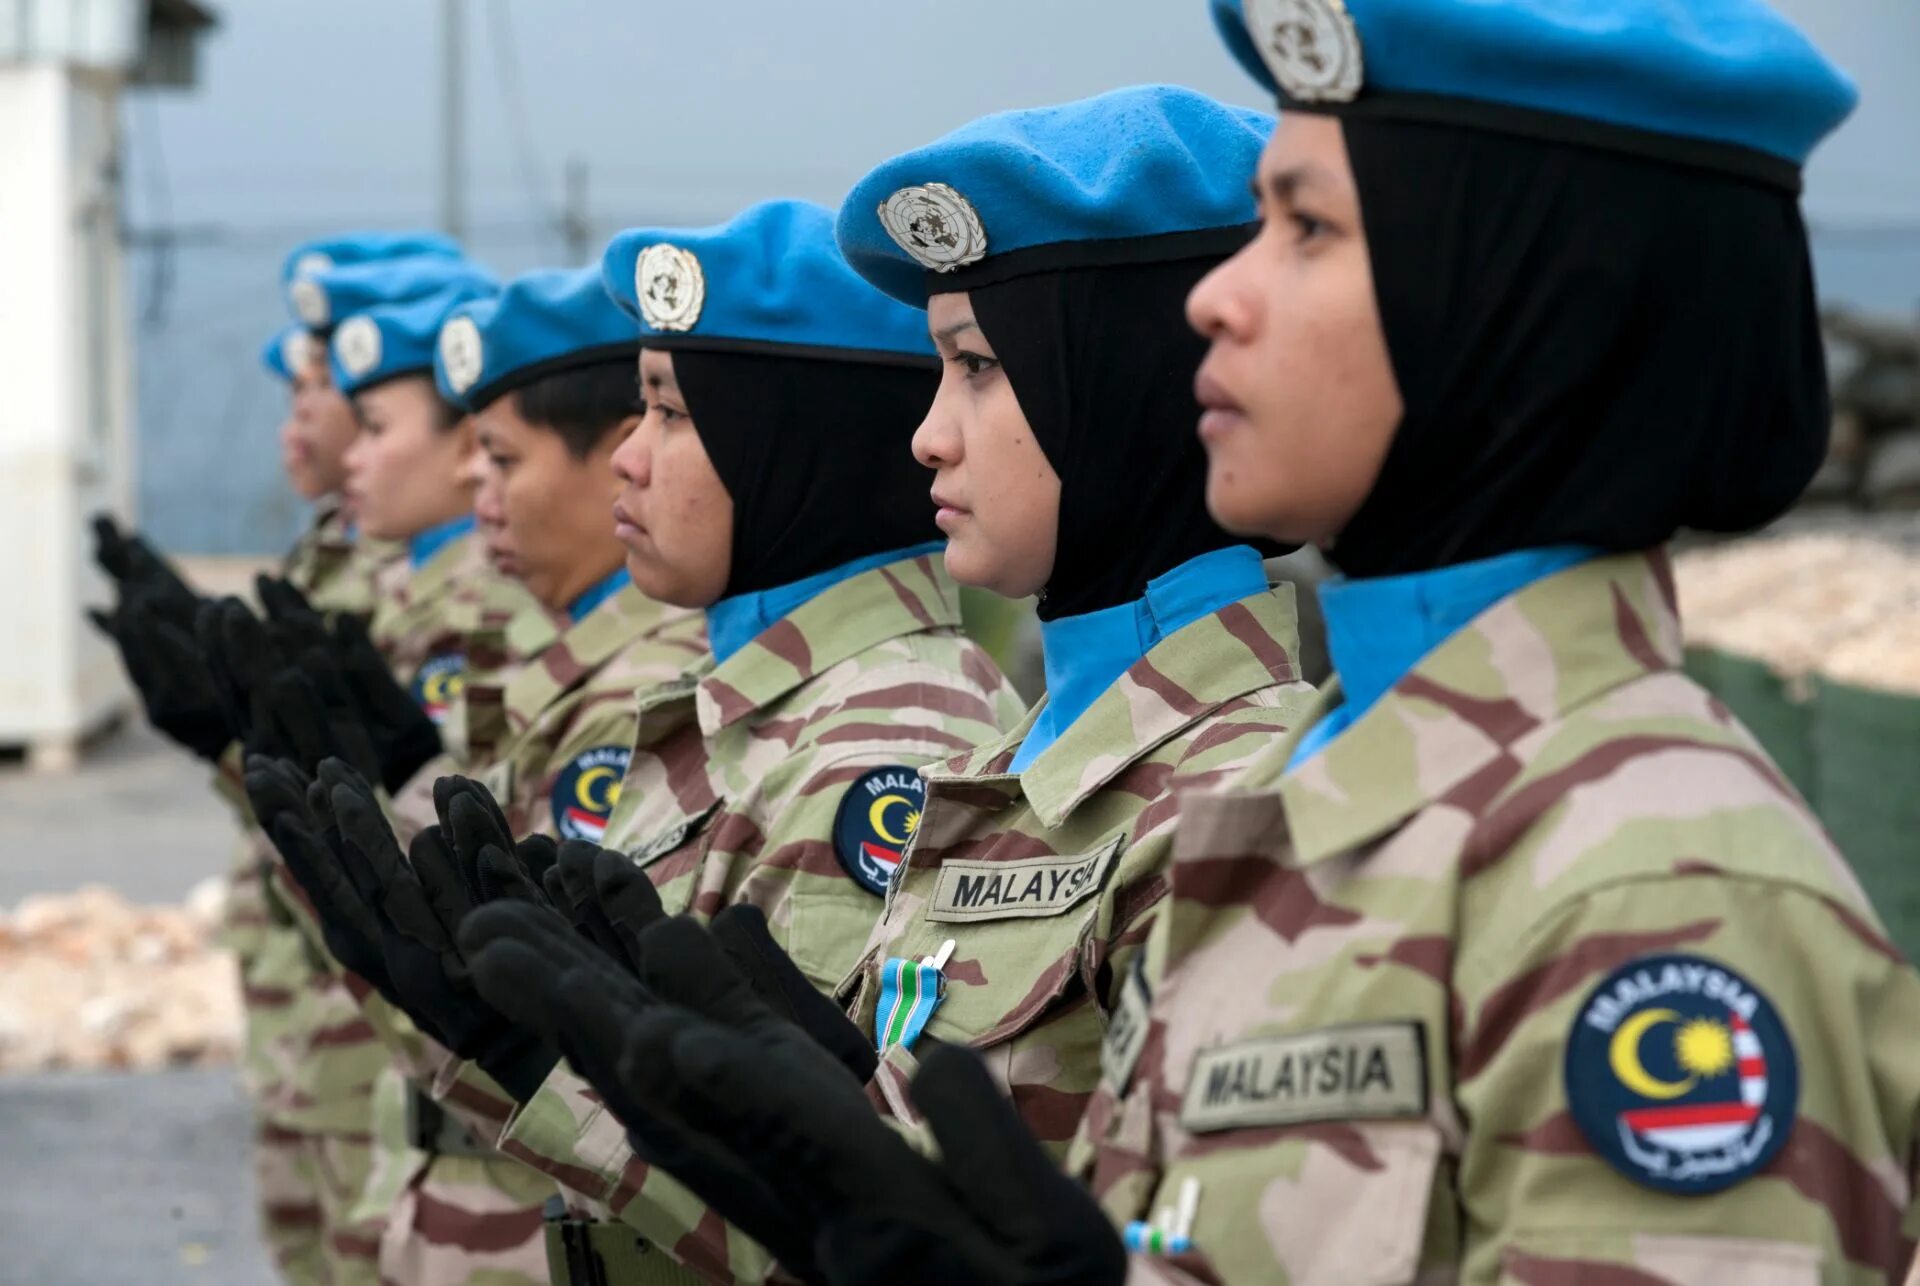 Форма миротворческих сил ООН. Солдаты ООН. Миротворцы ООН. Армия ООН. Голубой оон